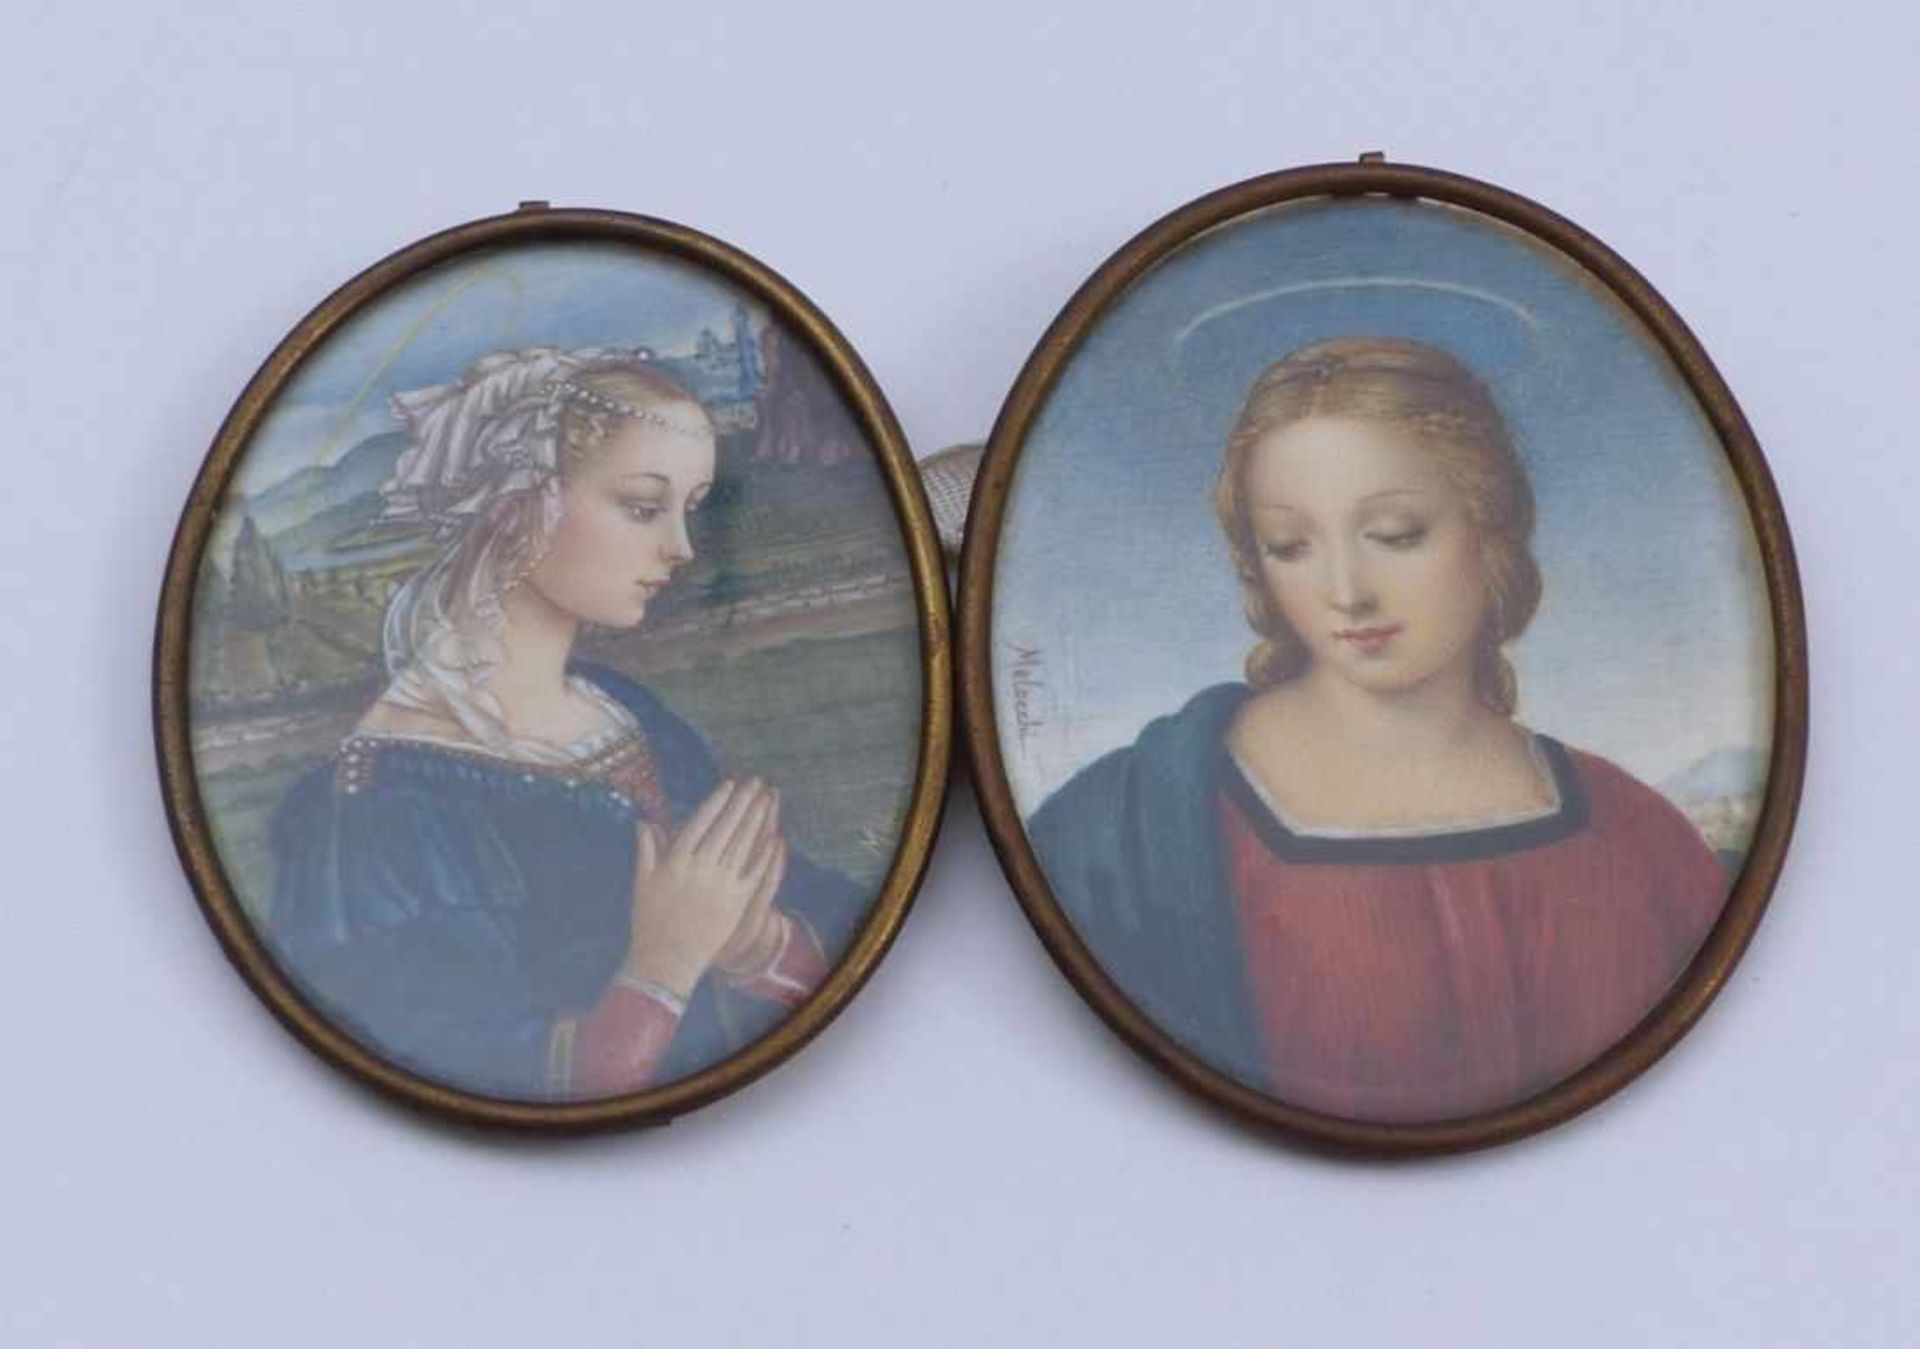 Melocchi, E.Zwei Madonnendarstellungen(Florenz, 20. Jh.) Bildausschnitt nach dem Gemälde des Filippo